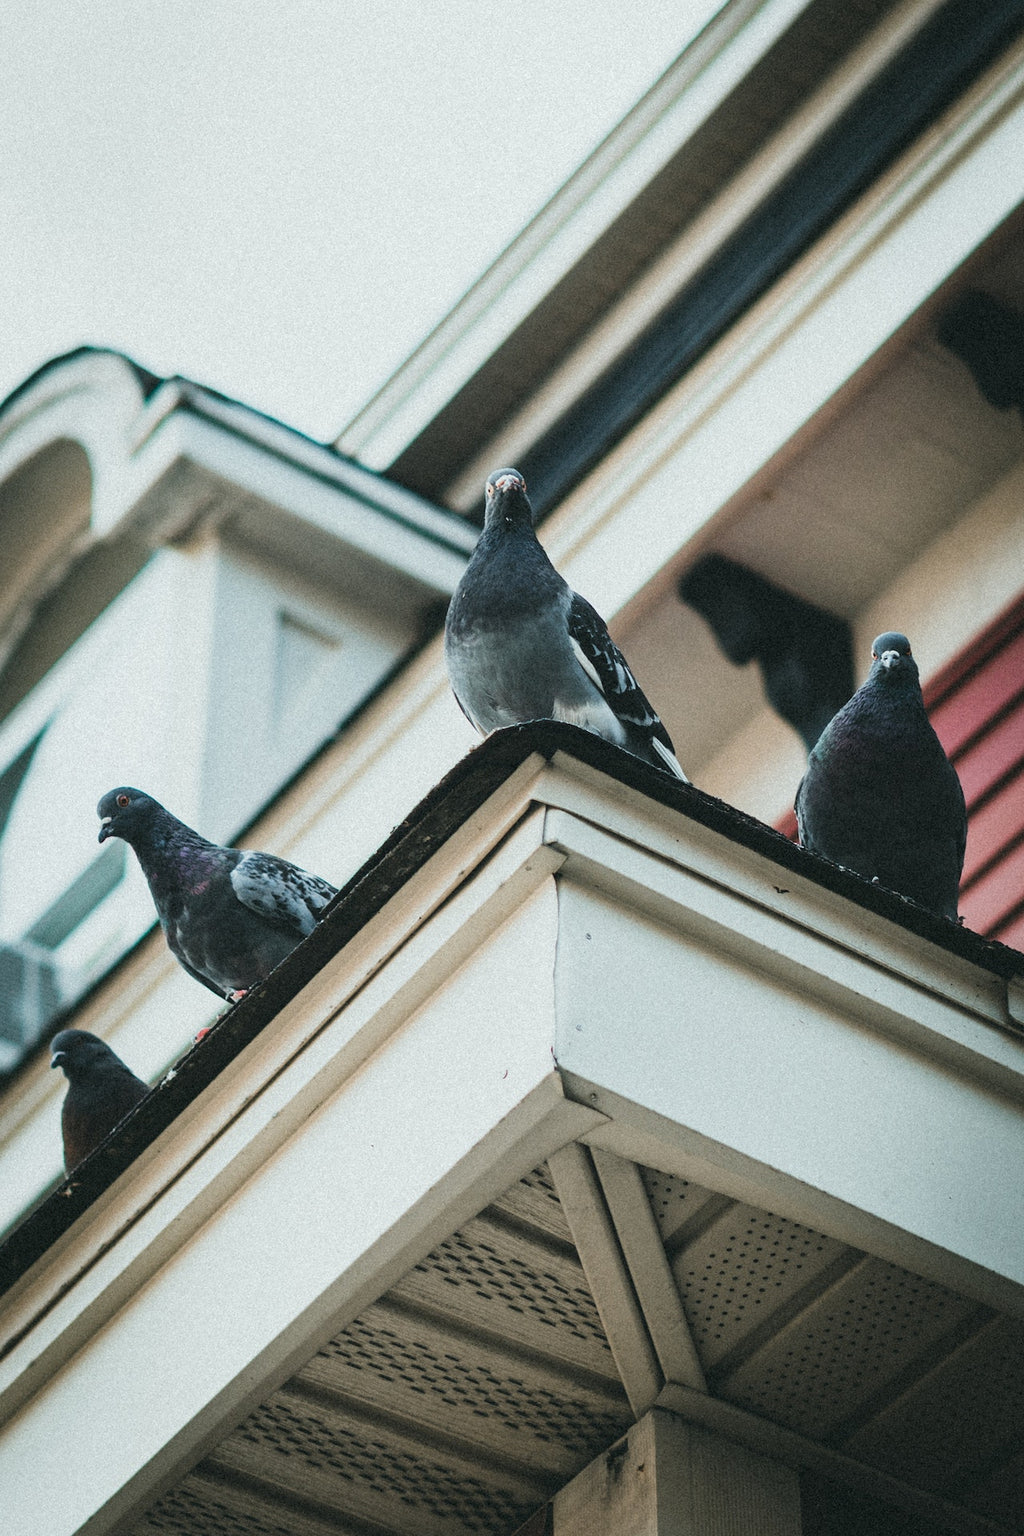 Comment éloigner les pigeons d'un balcon ?